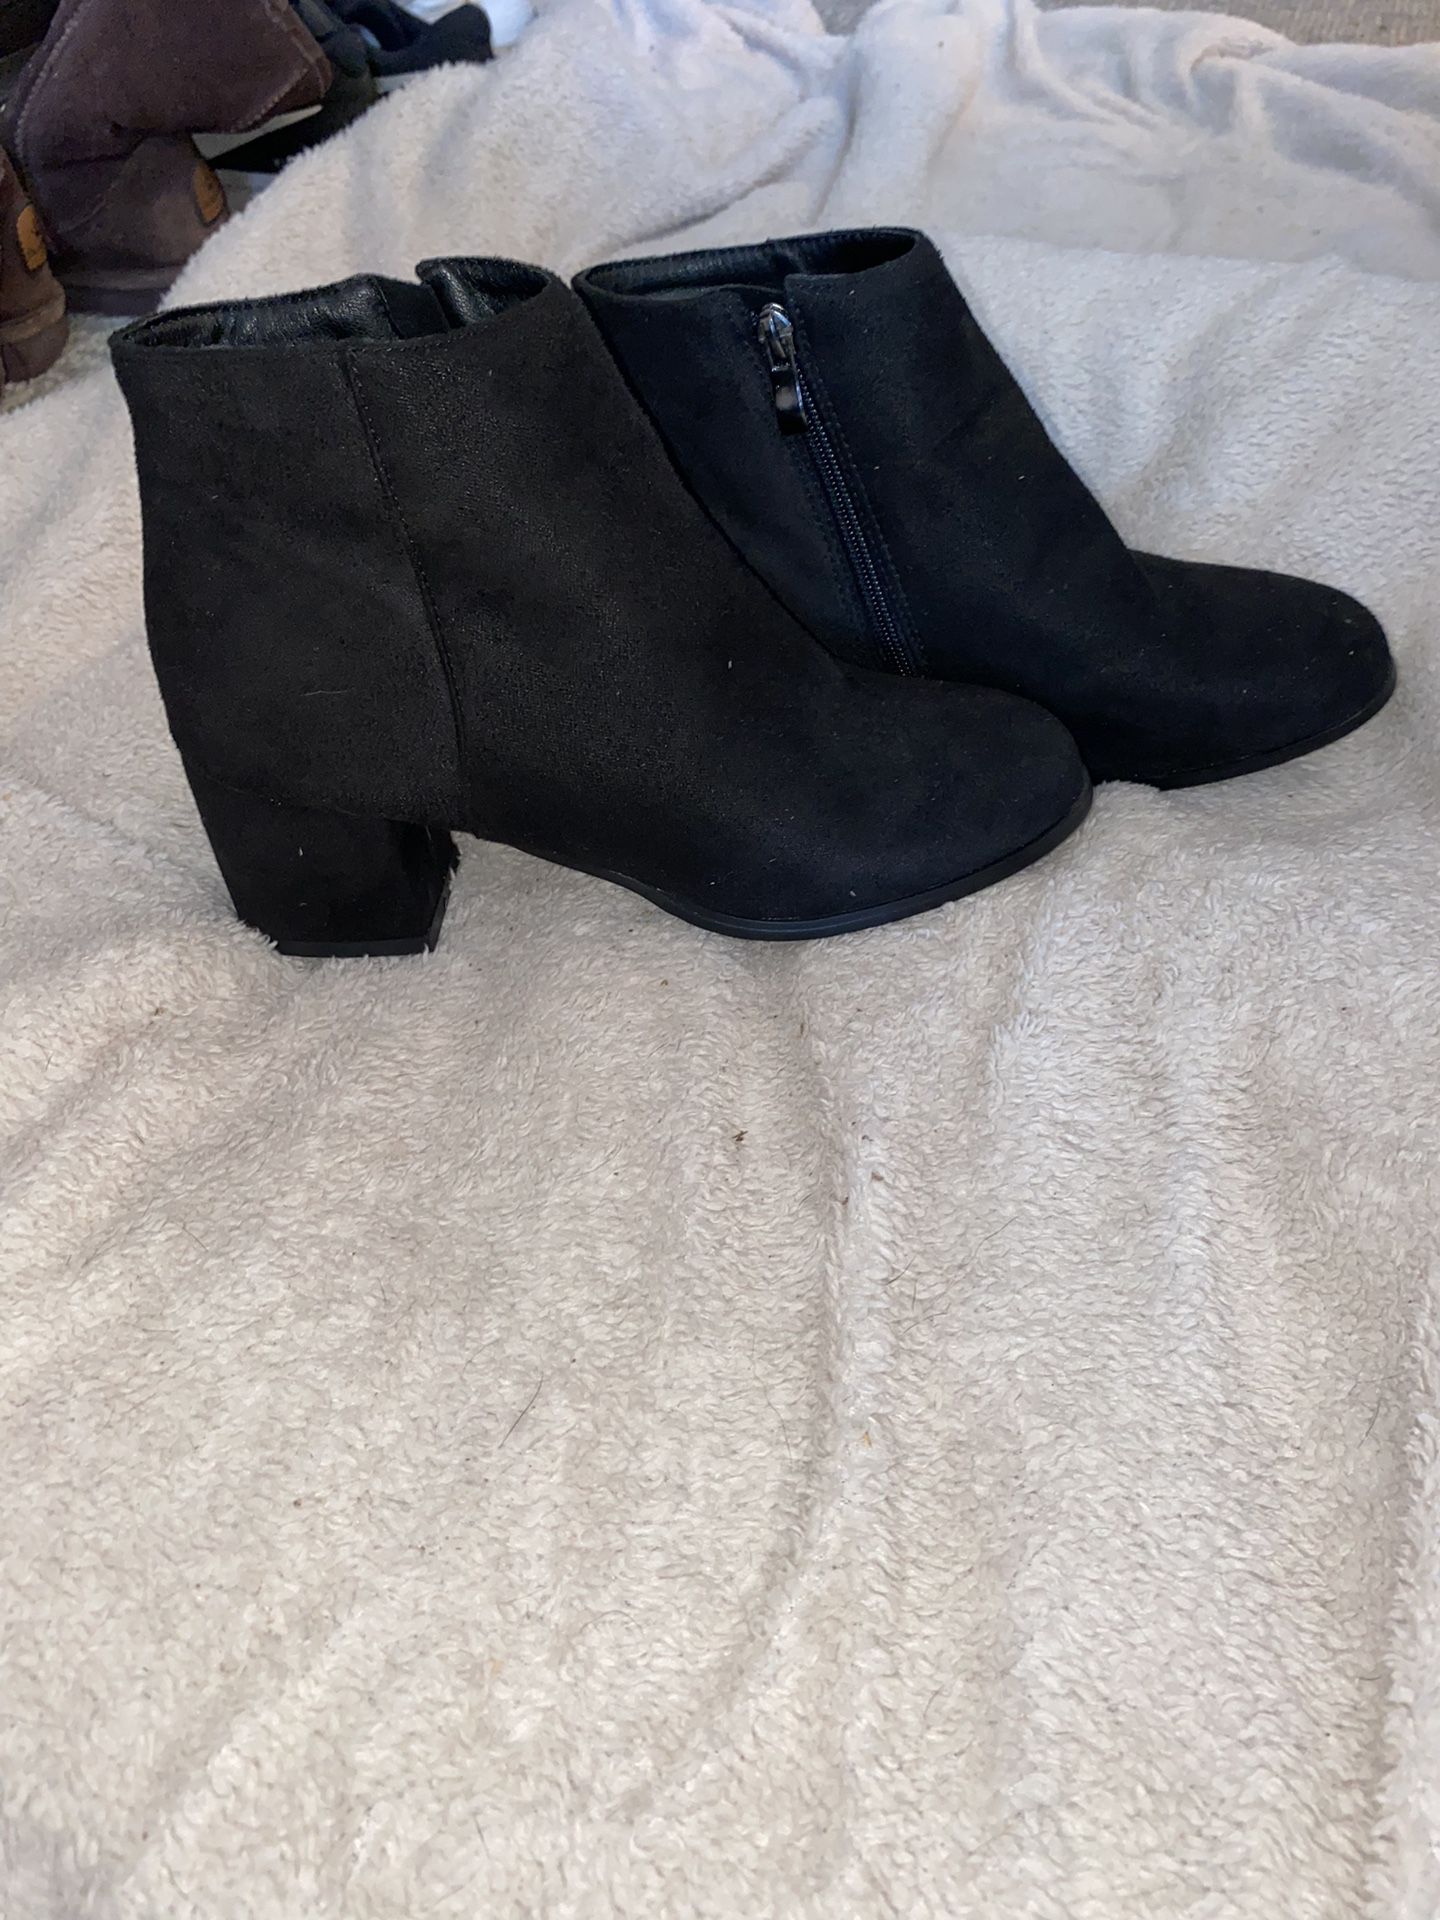 Women’s Size 8 heel boots 